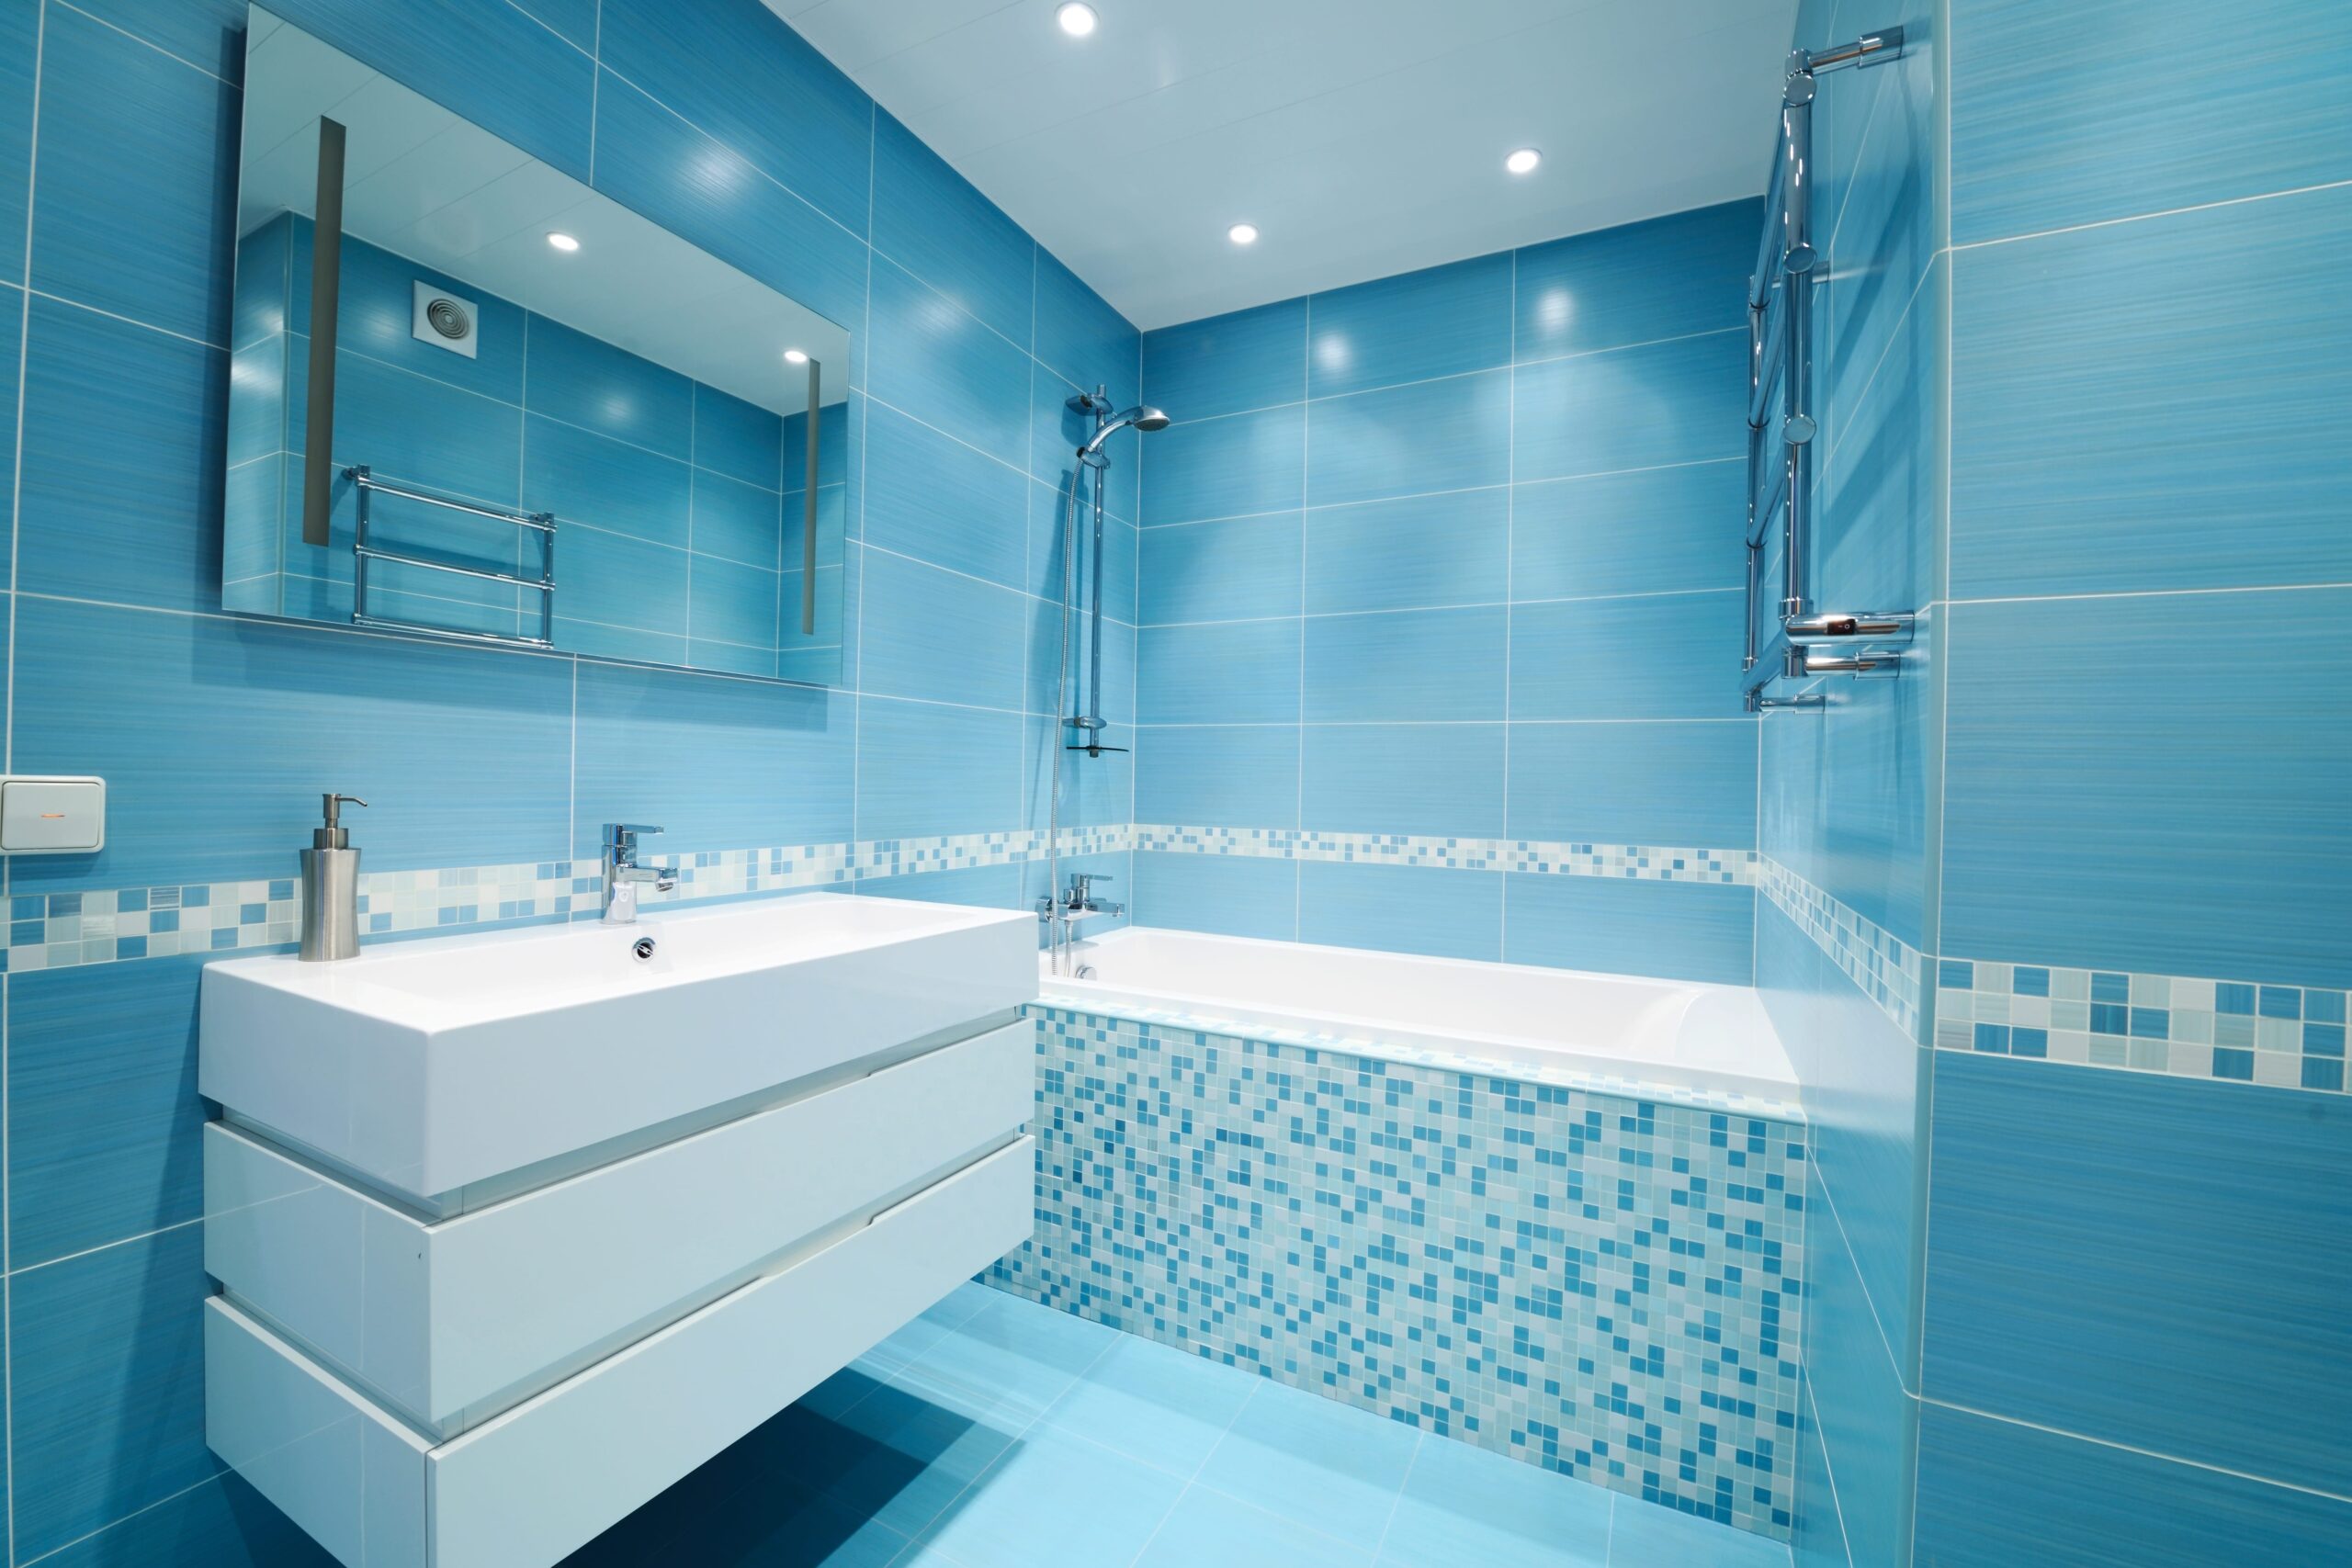 Badezimmer In Blau – Ideen, Anregungen Und Tipps | Obi intended for Badezimmer Design Blau